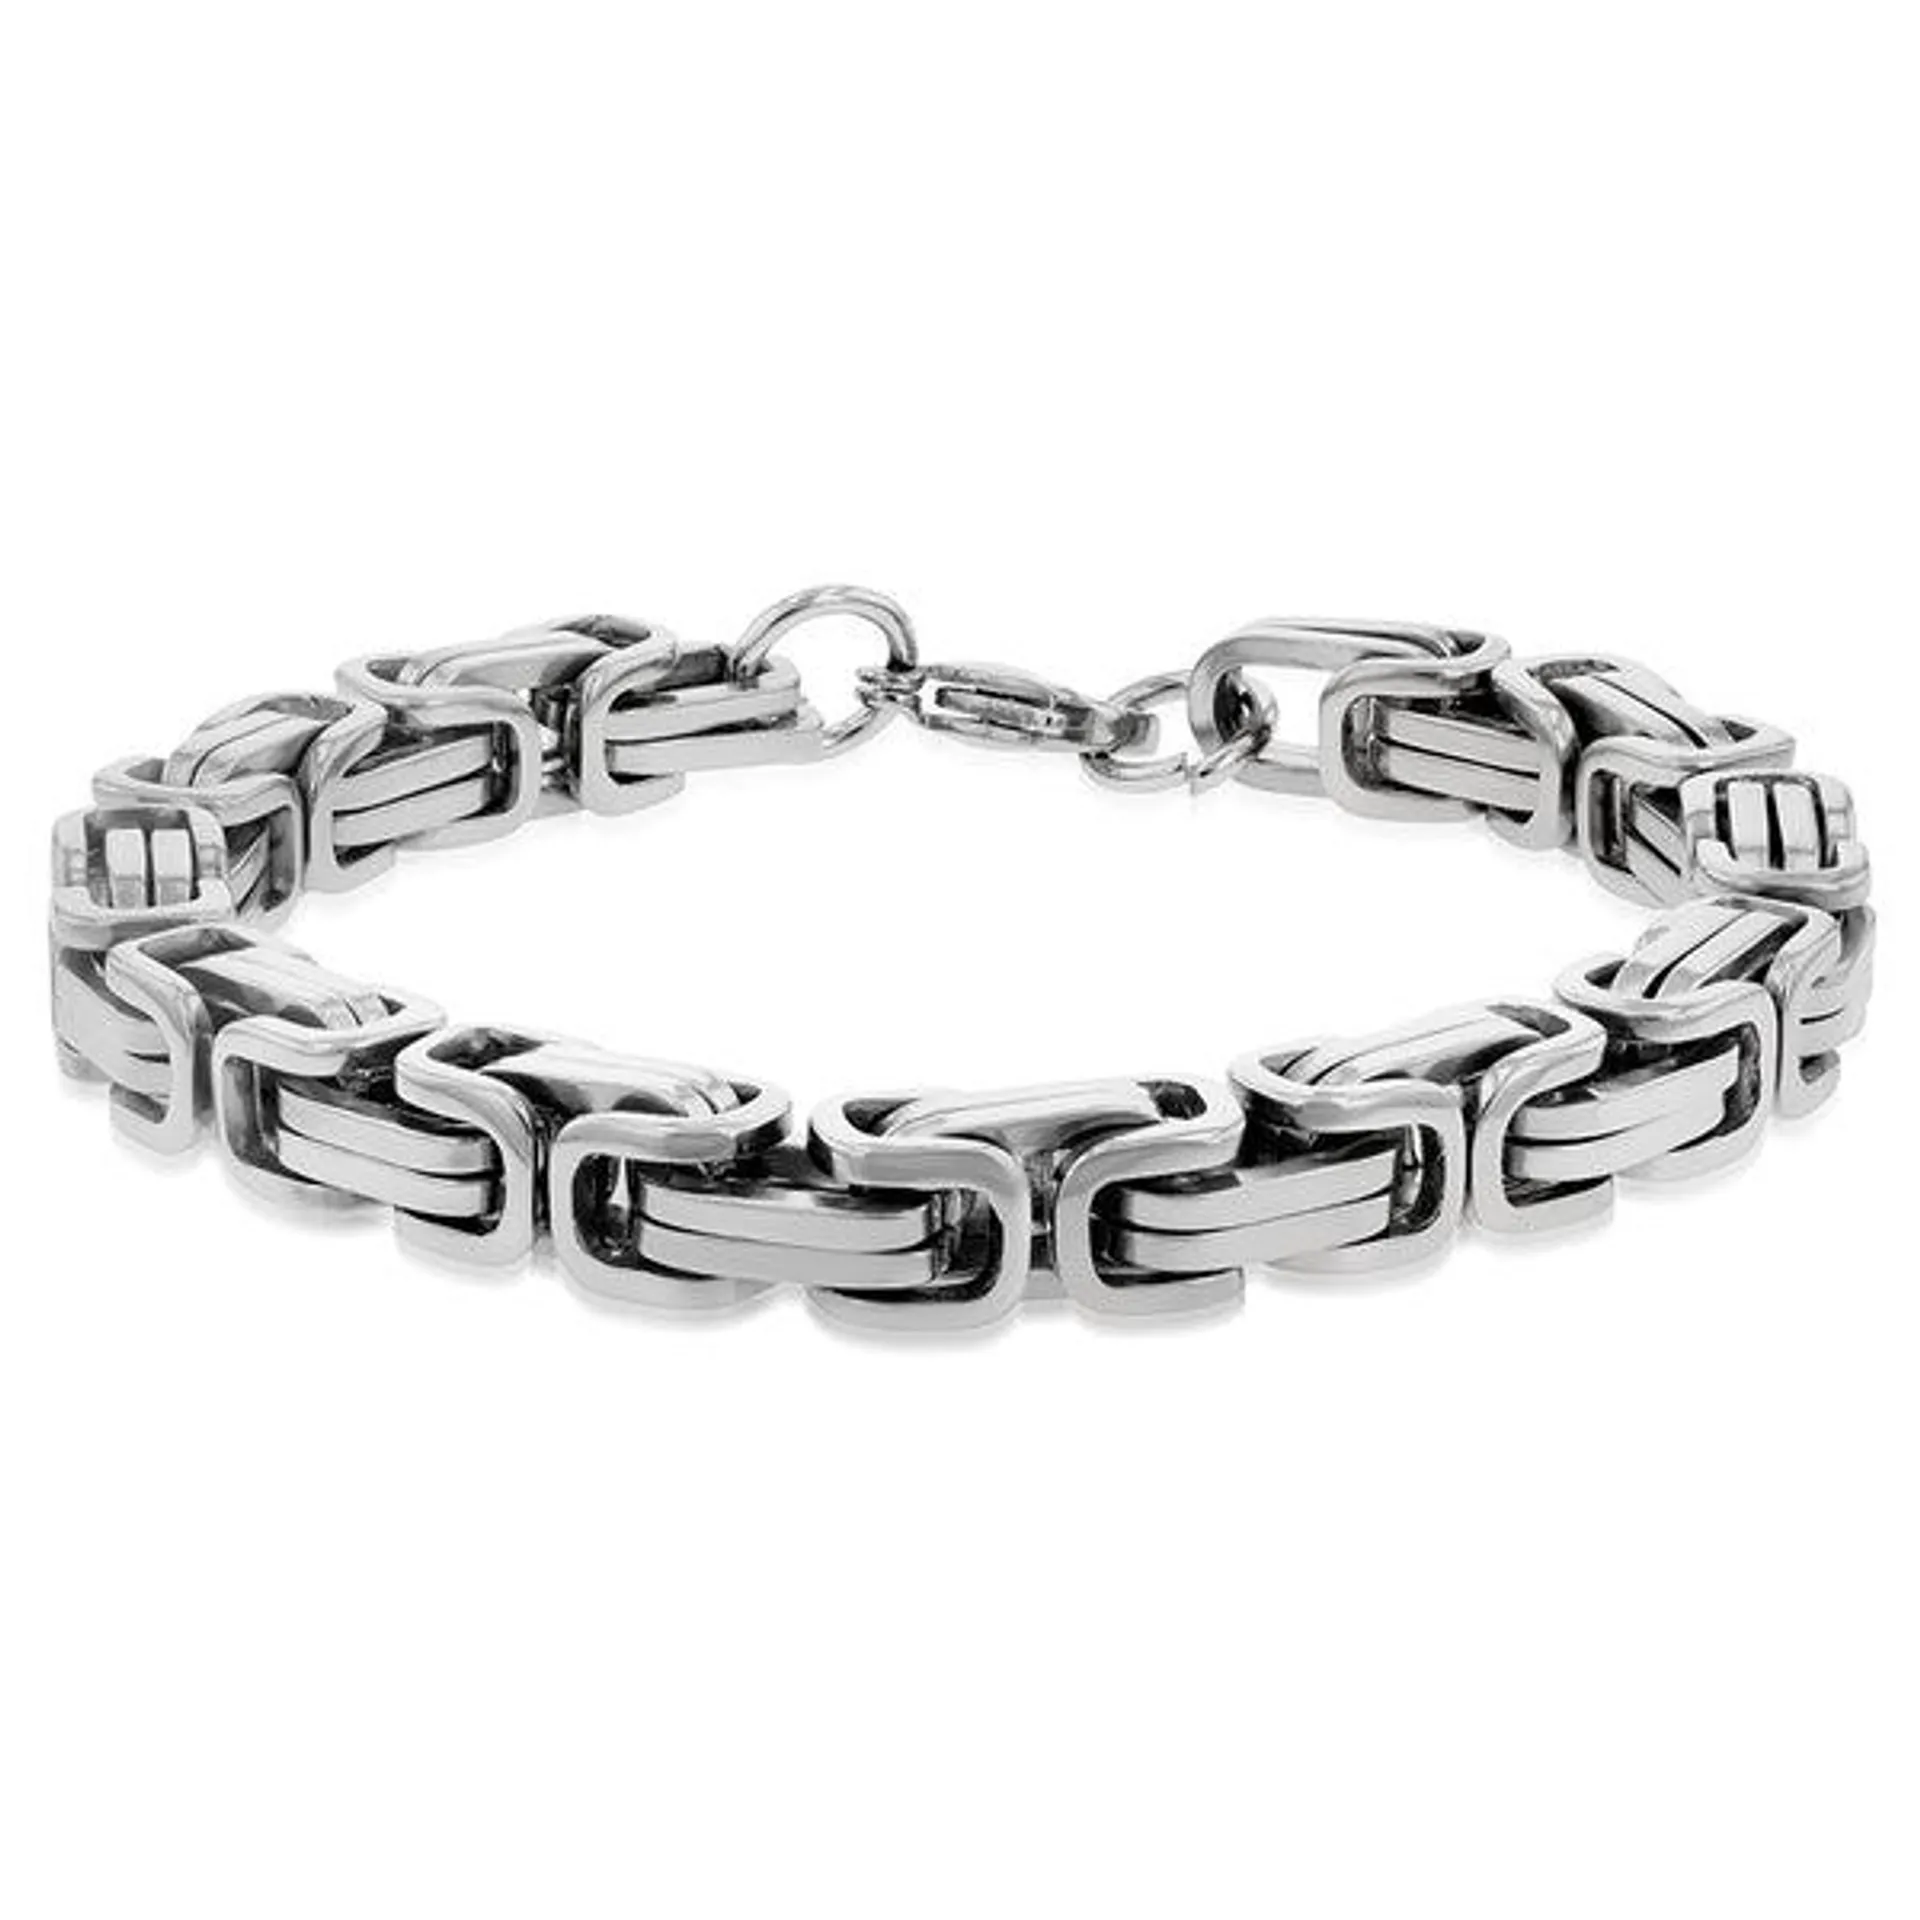 Stainless Steel Fancy Links 22cm Bracelet